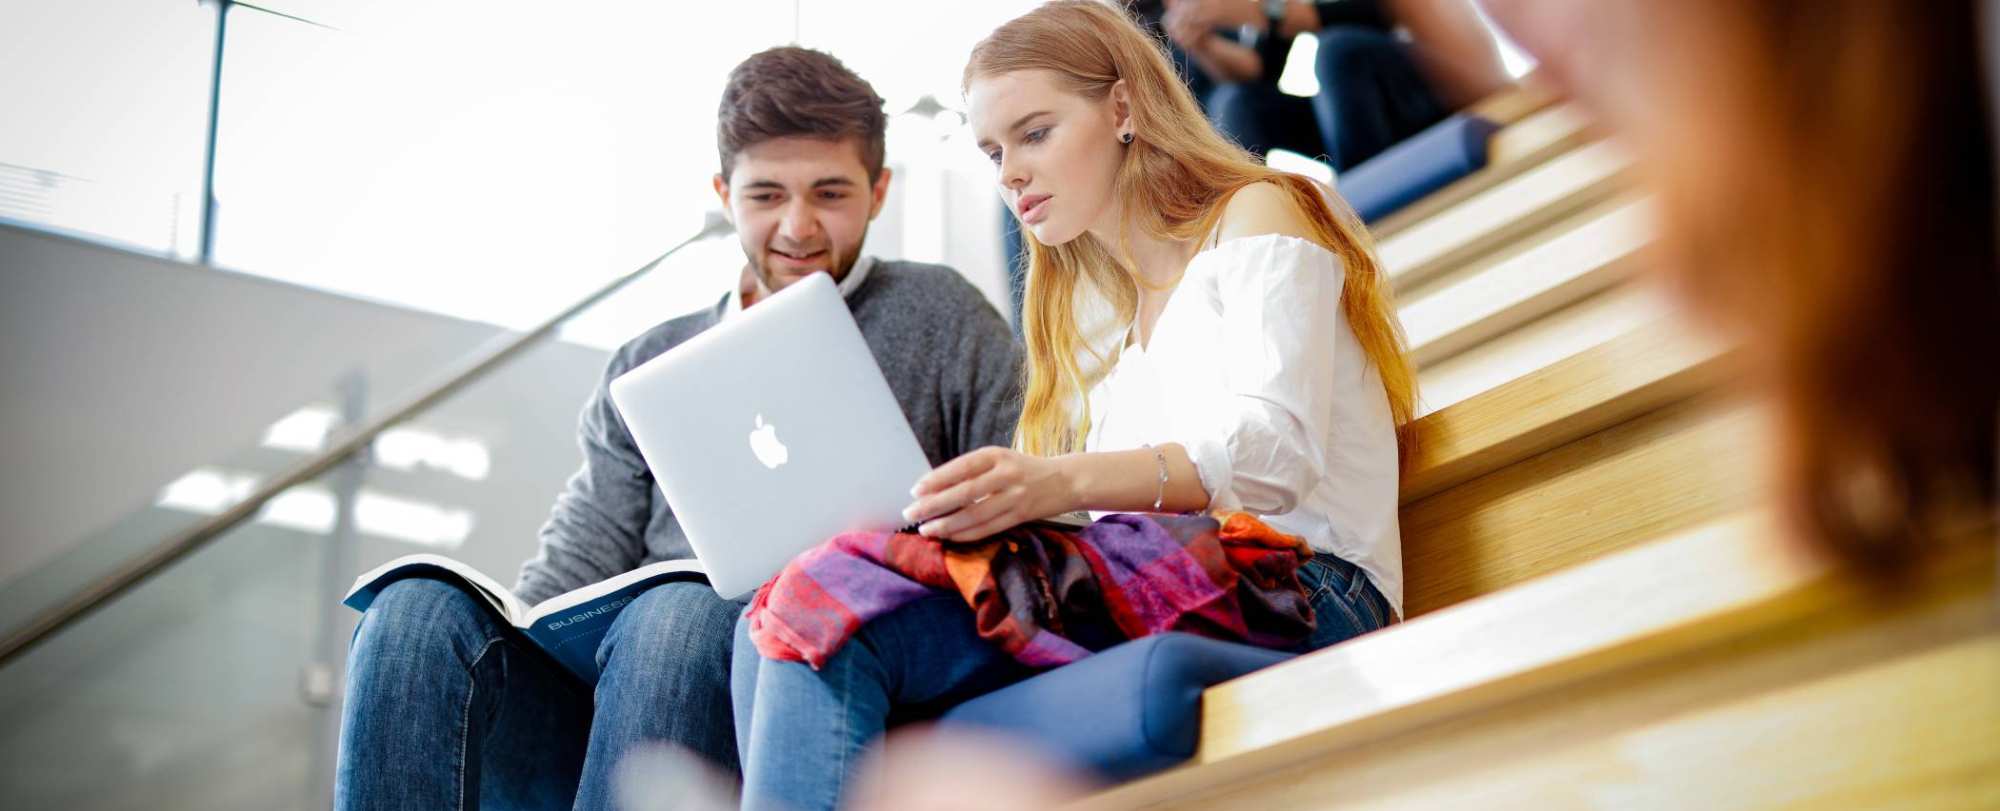 studenten overleggen met laptop